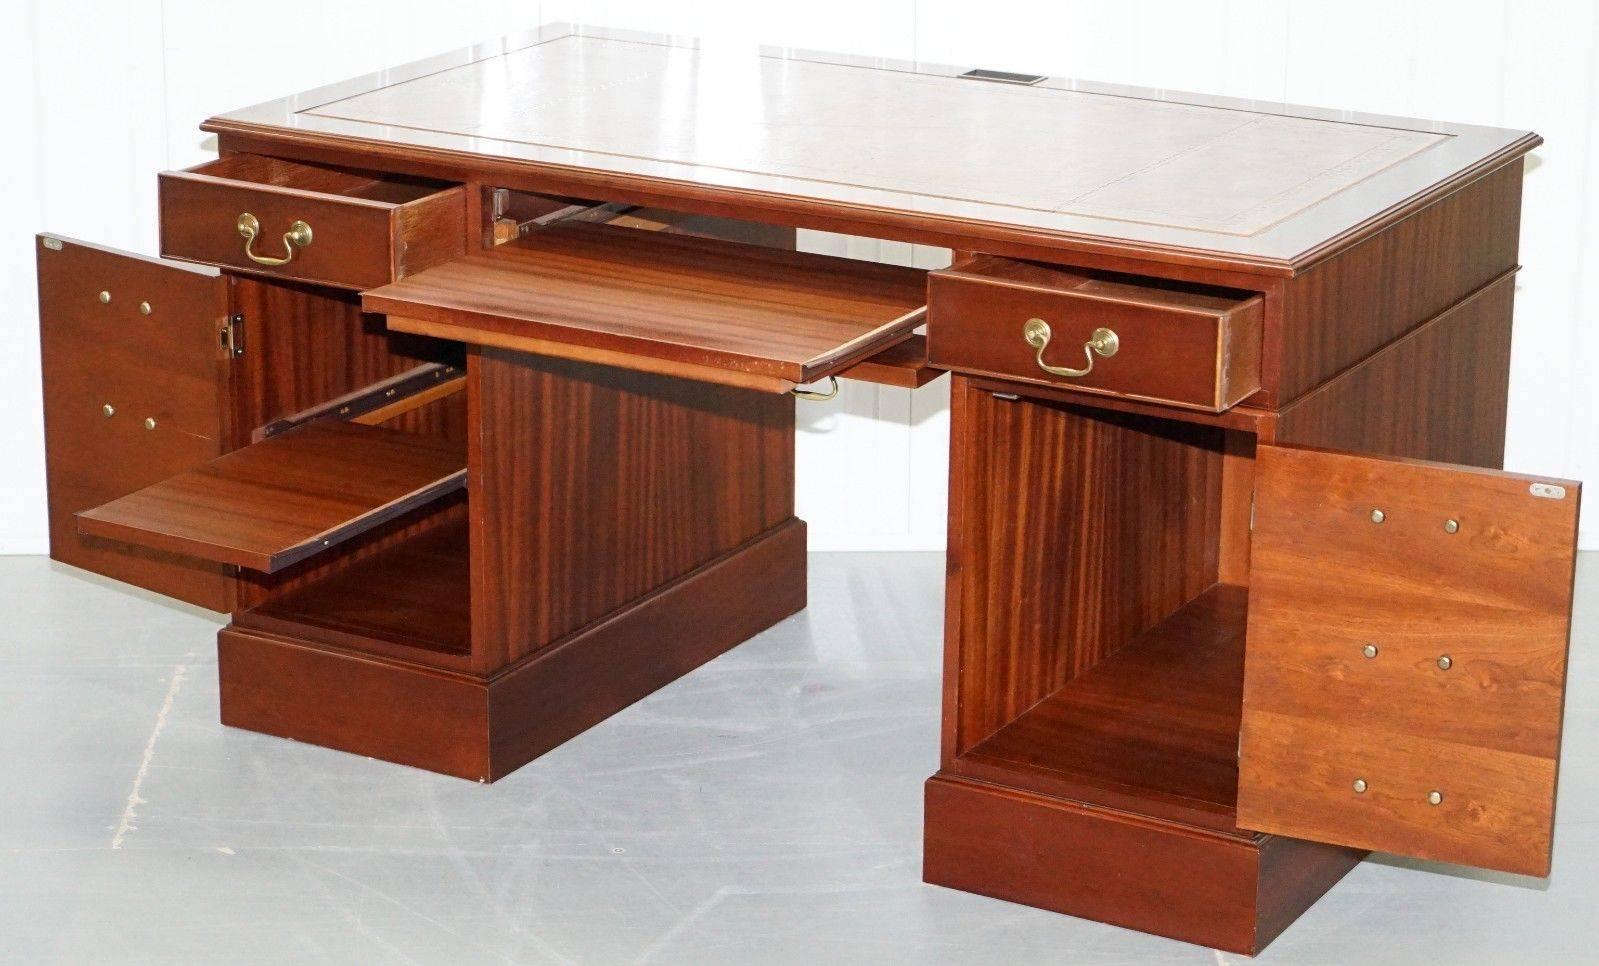 Hardwood Twin Pedestal Partner Desk Leather Top Designed to House Computer For Sale 1